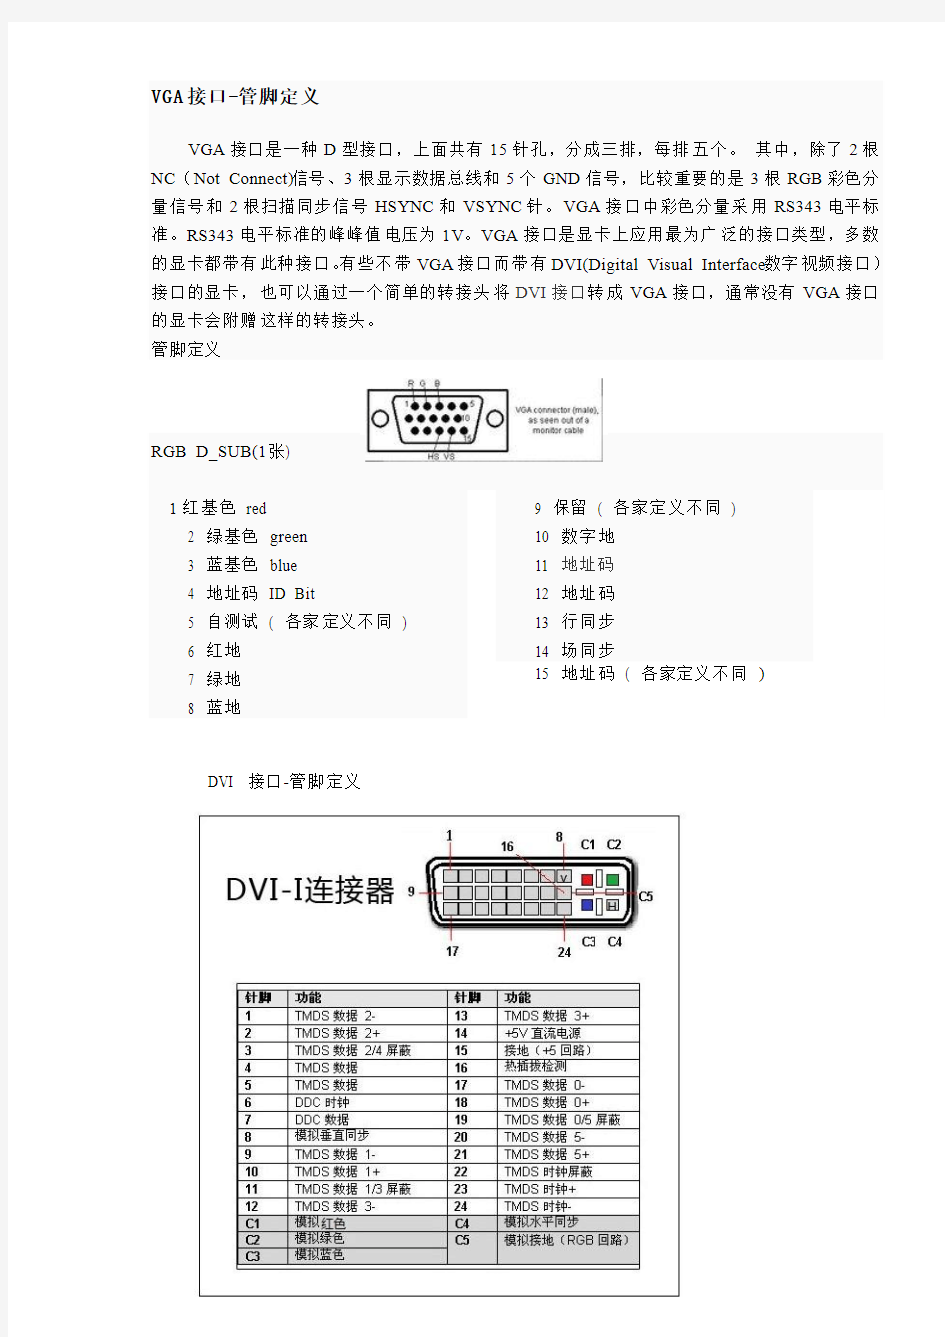 DVI转VGA 接口解决分辨率异常问题详解